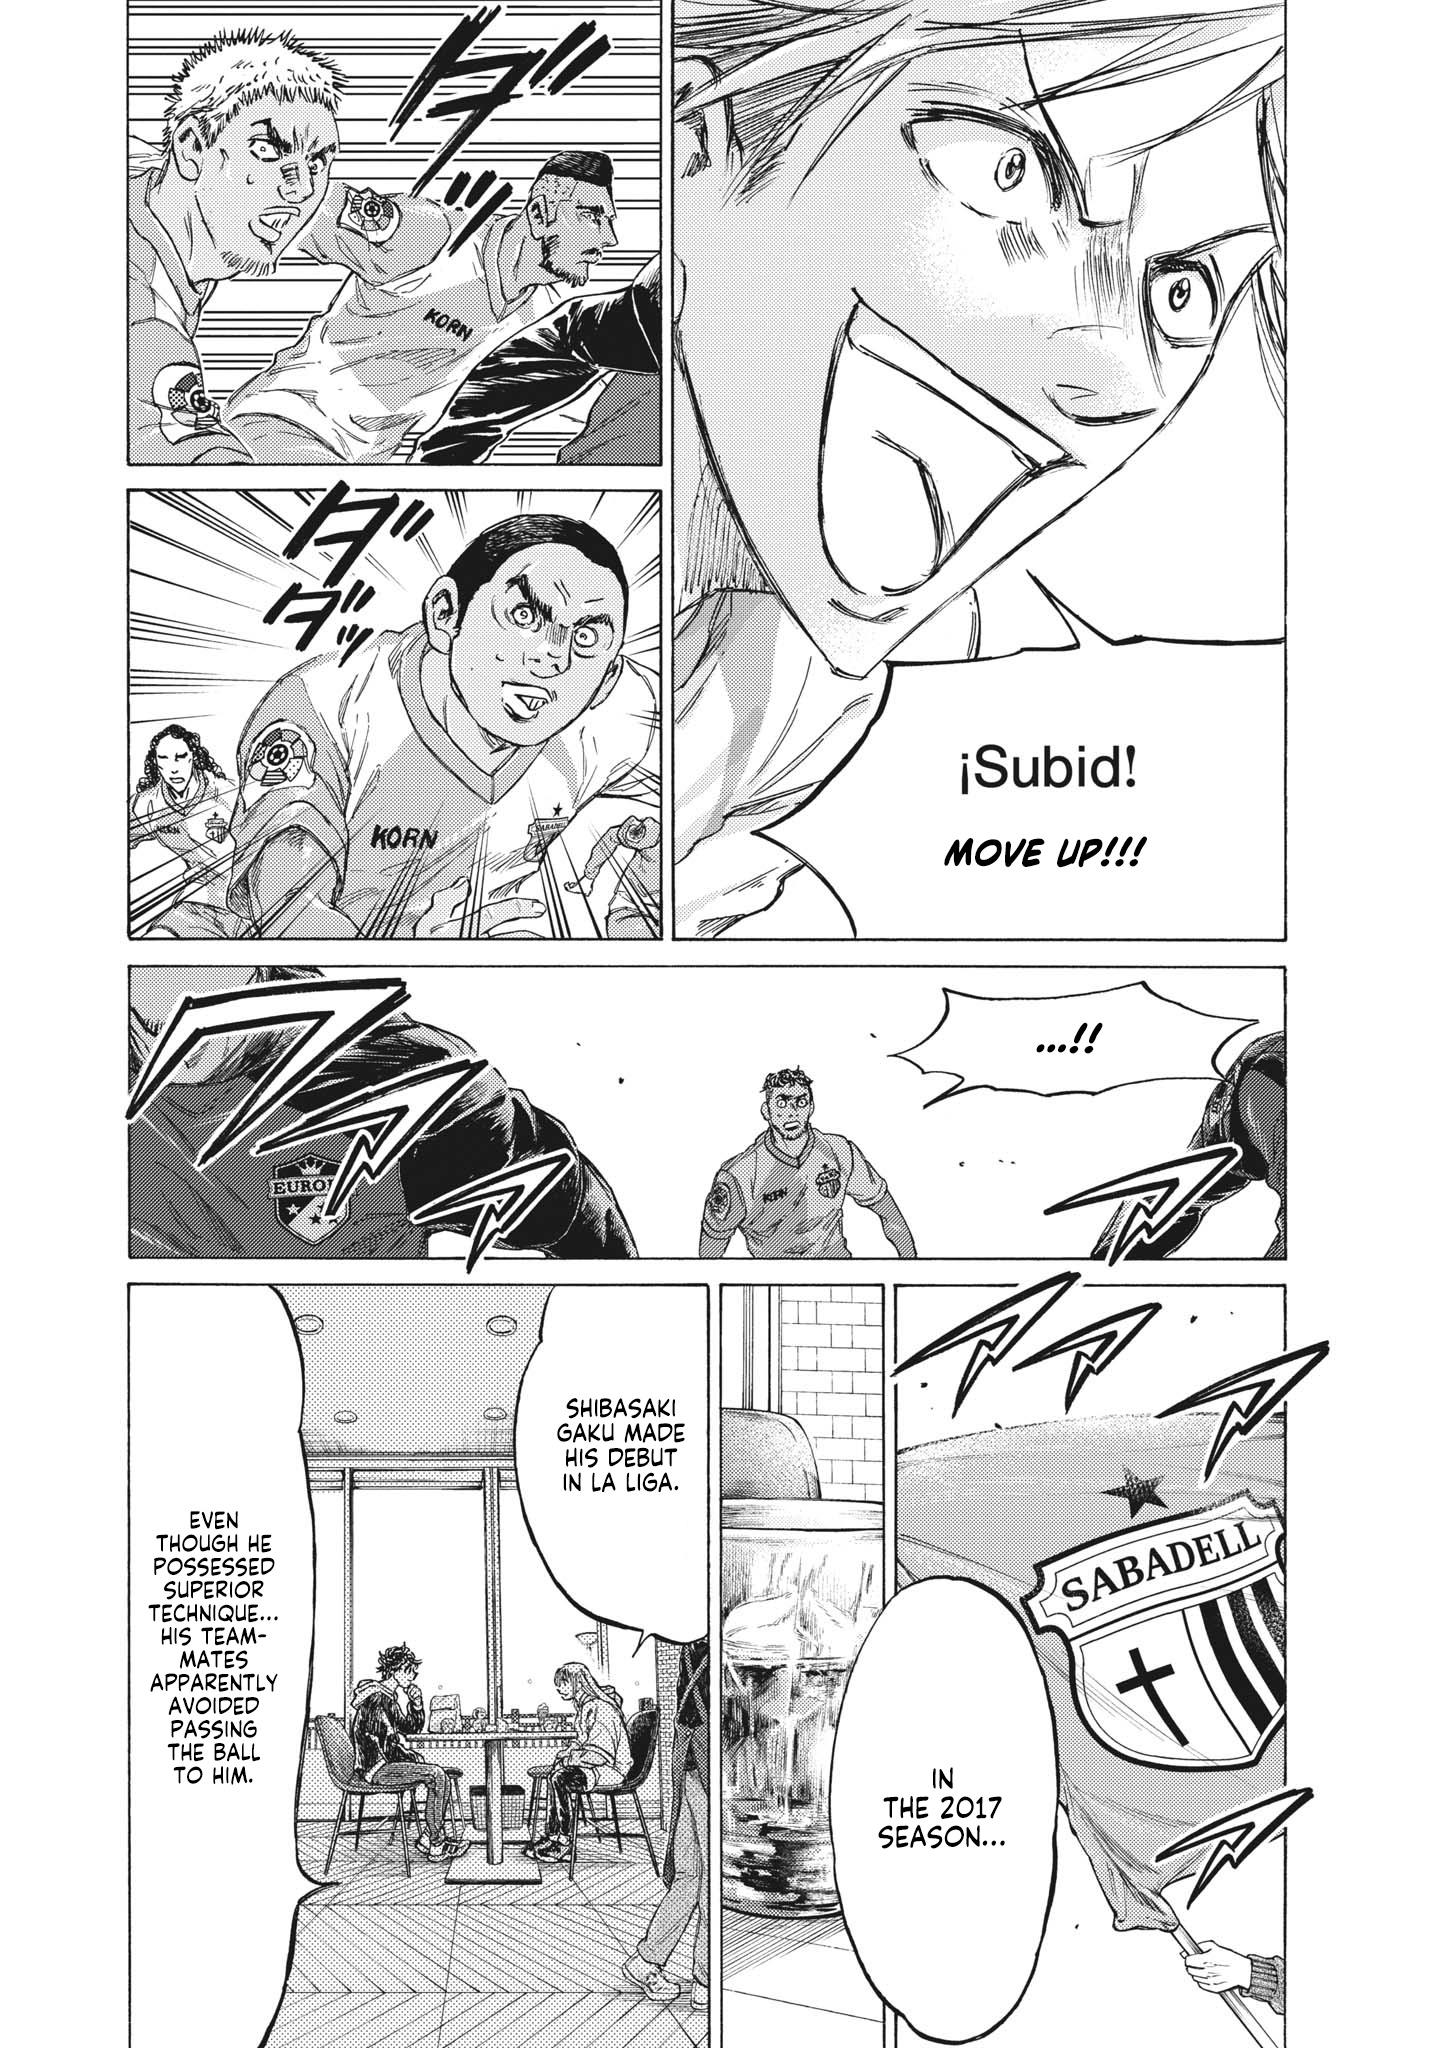 Read Ao Ashi Chapter 334: Fukuda Tatsuya'S Miracle - Manganelo